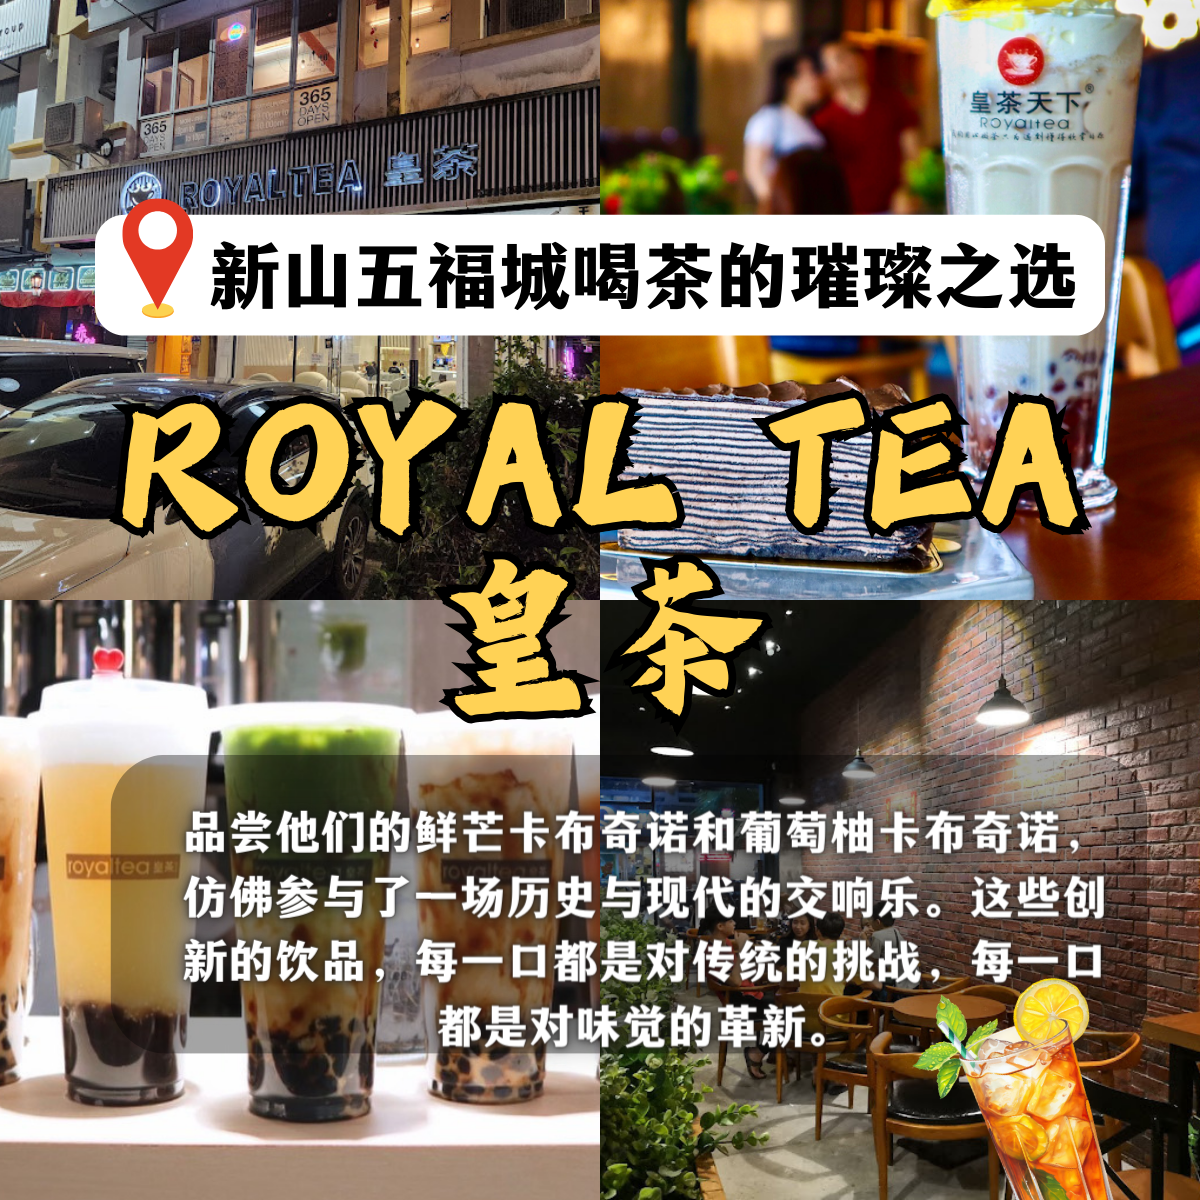 Royaltea 皇茶